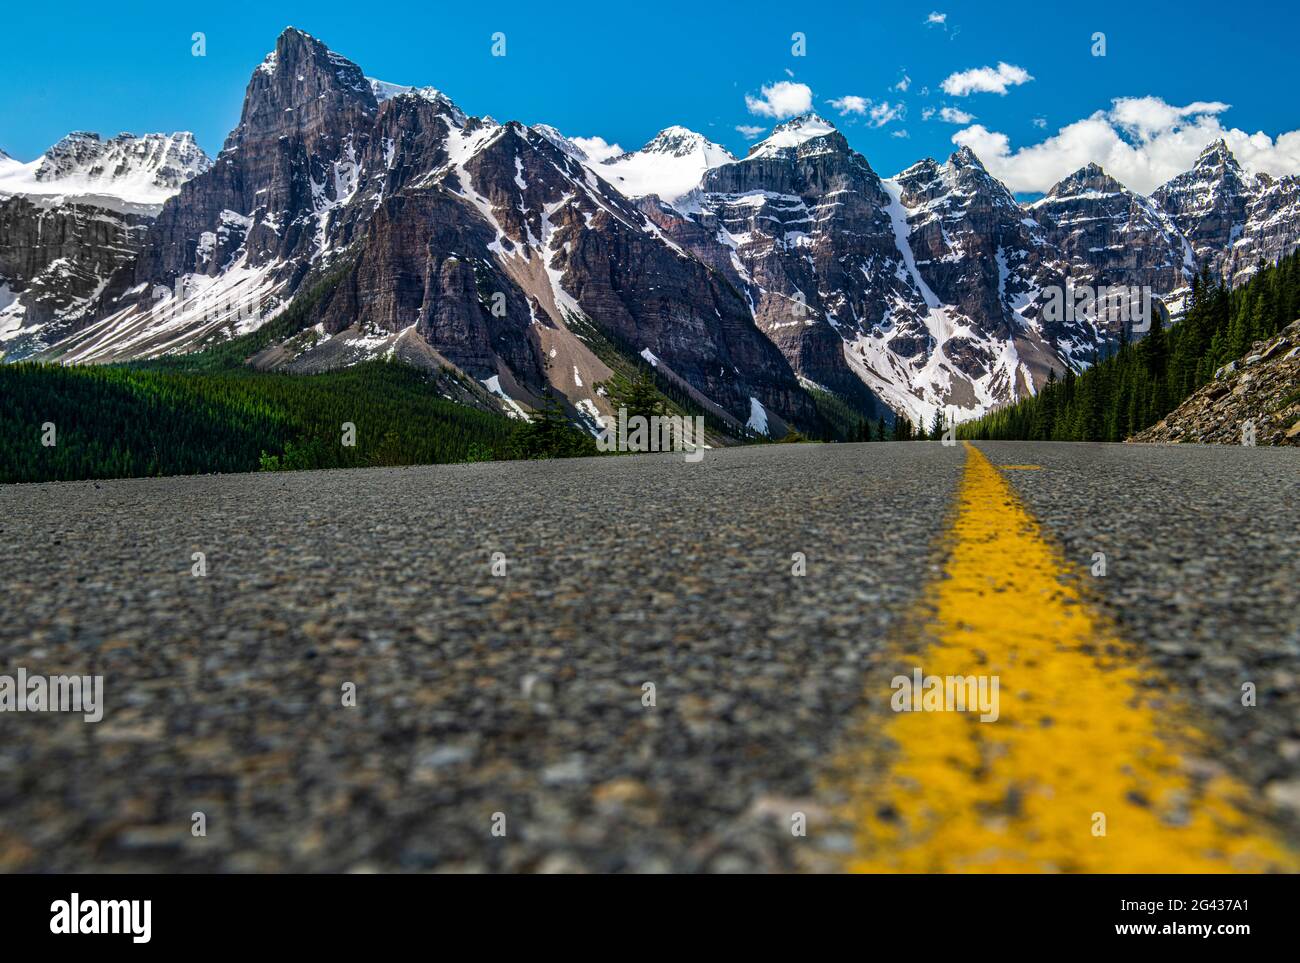 Landschaft mit Straße und kanadischen Rockies, Moraine Lake Road, Banff National Park, Alberta, Kanada Stockfoto